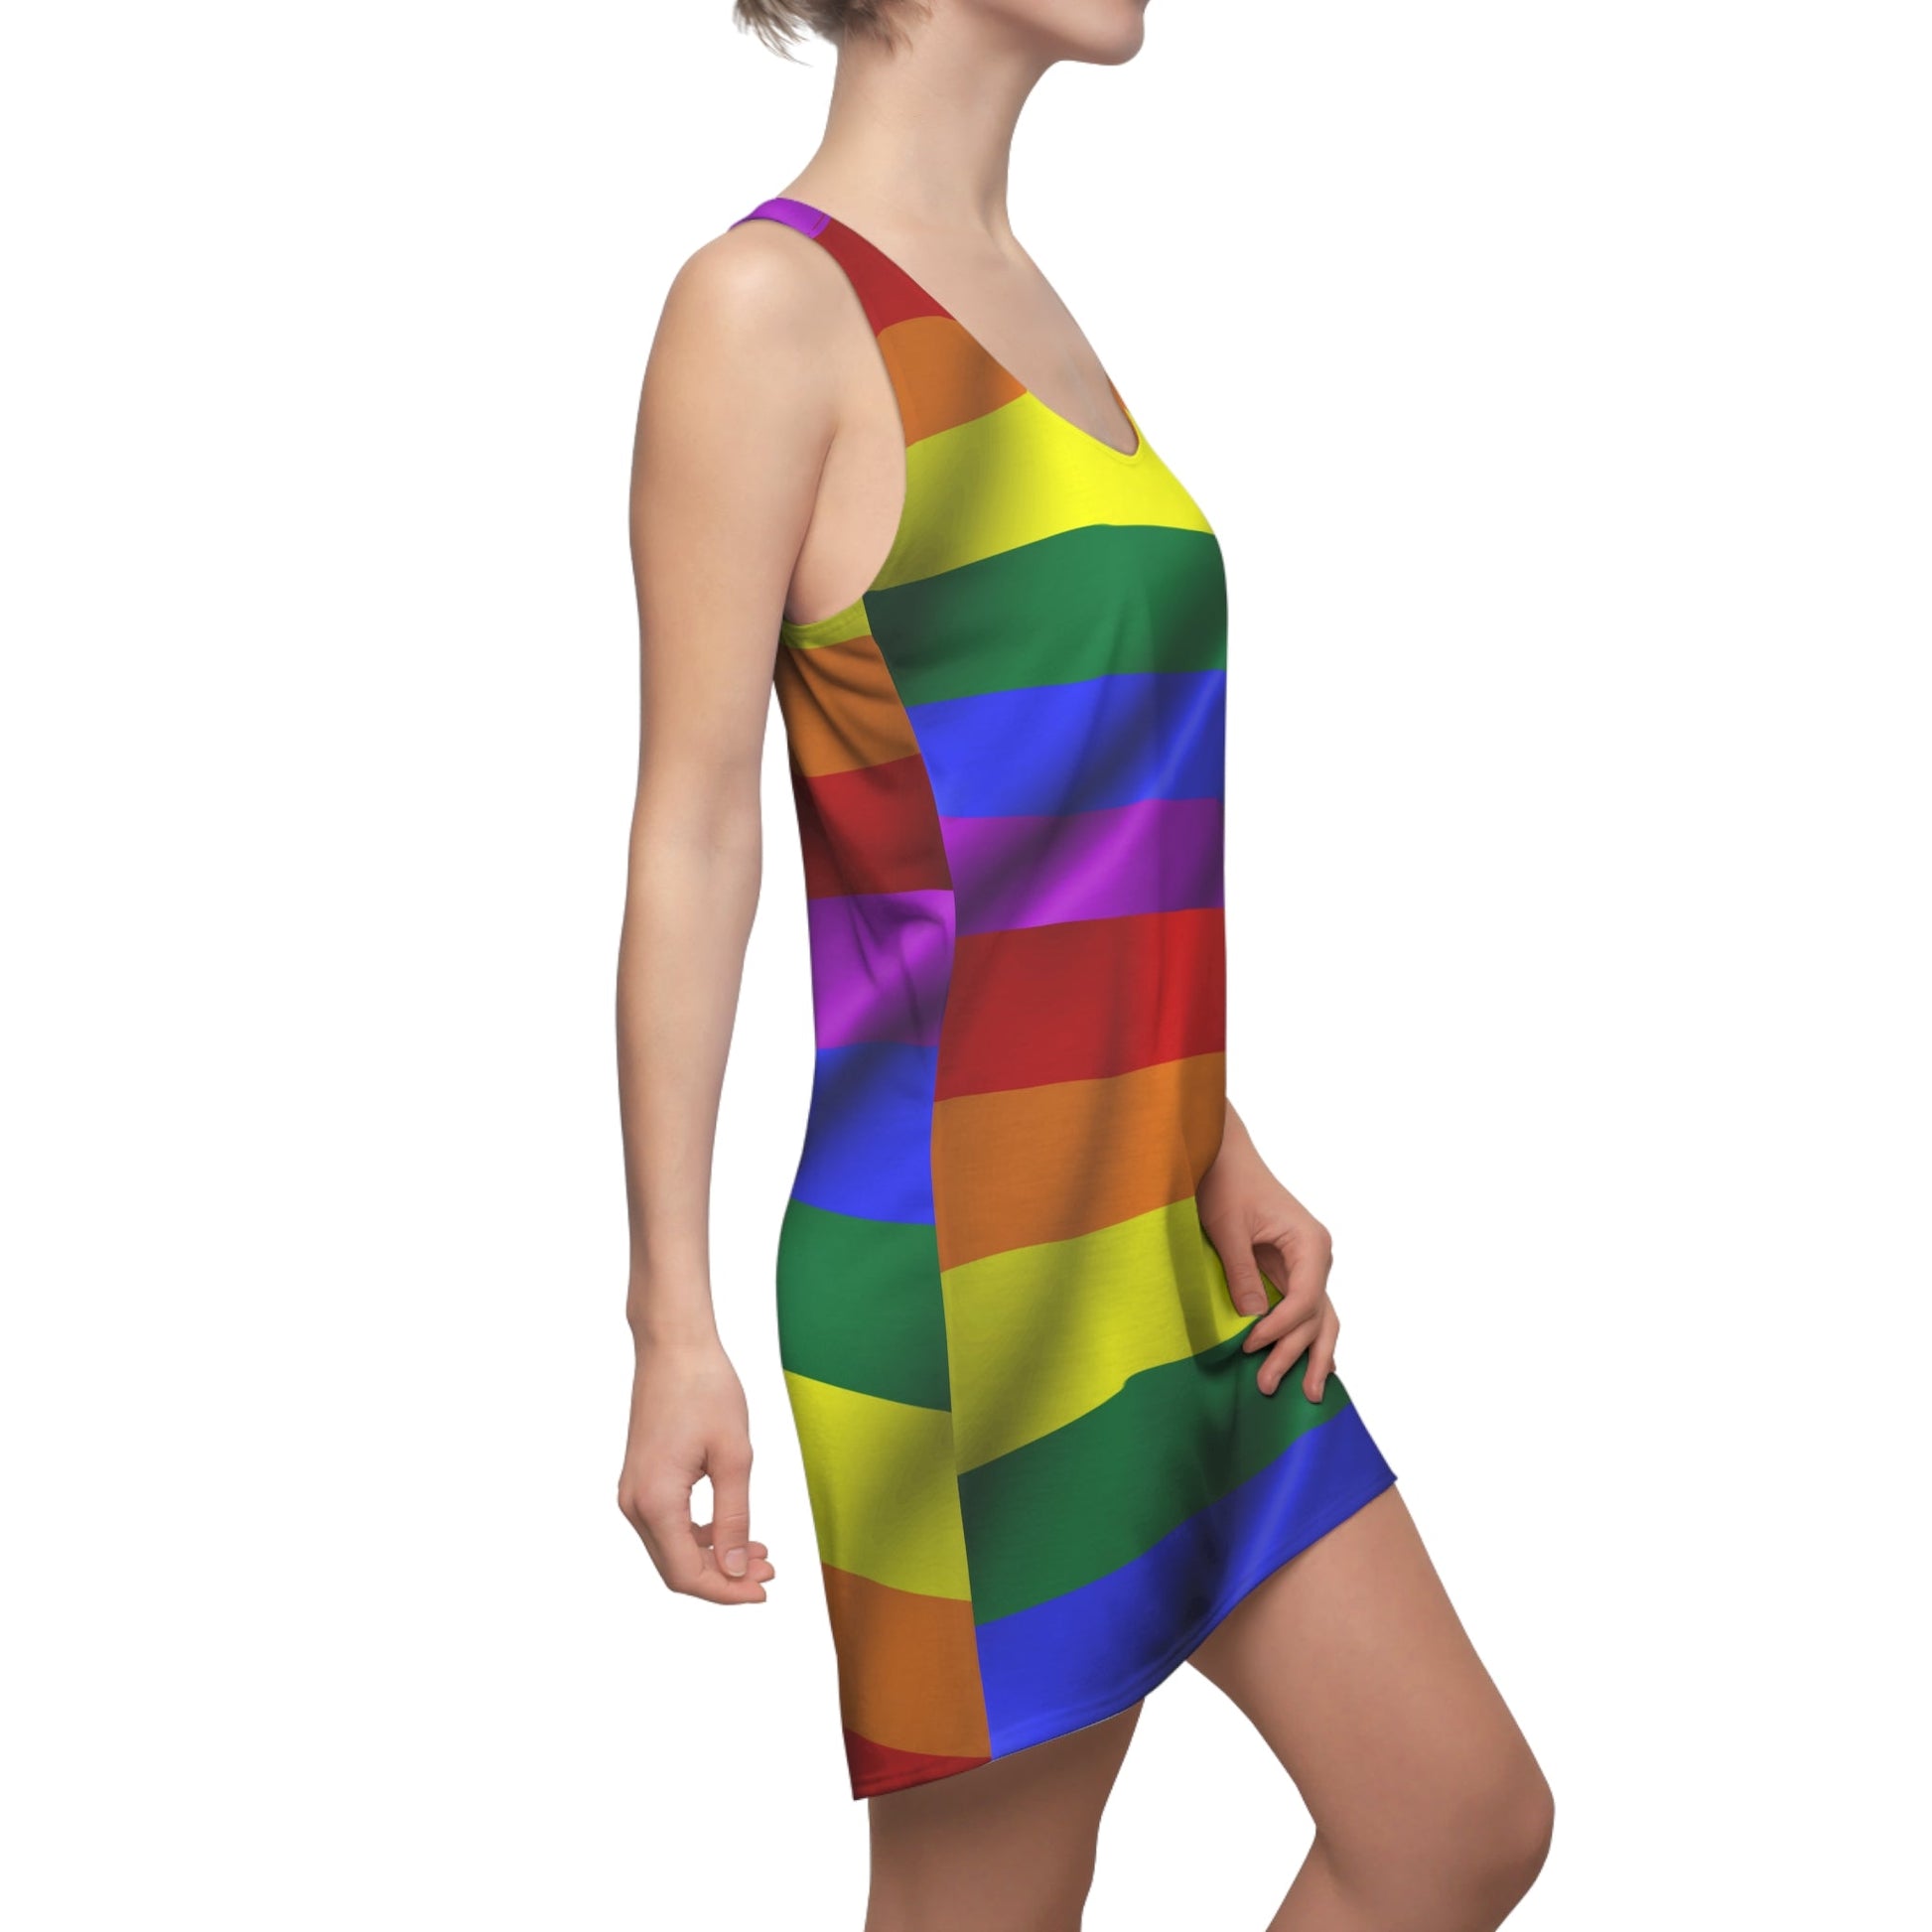 All Over Prints - Women's Rainbow LGBTQ Cut & Sew Racerback Dress